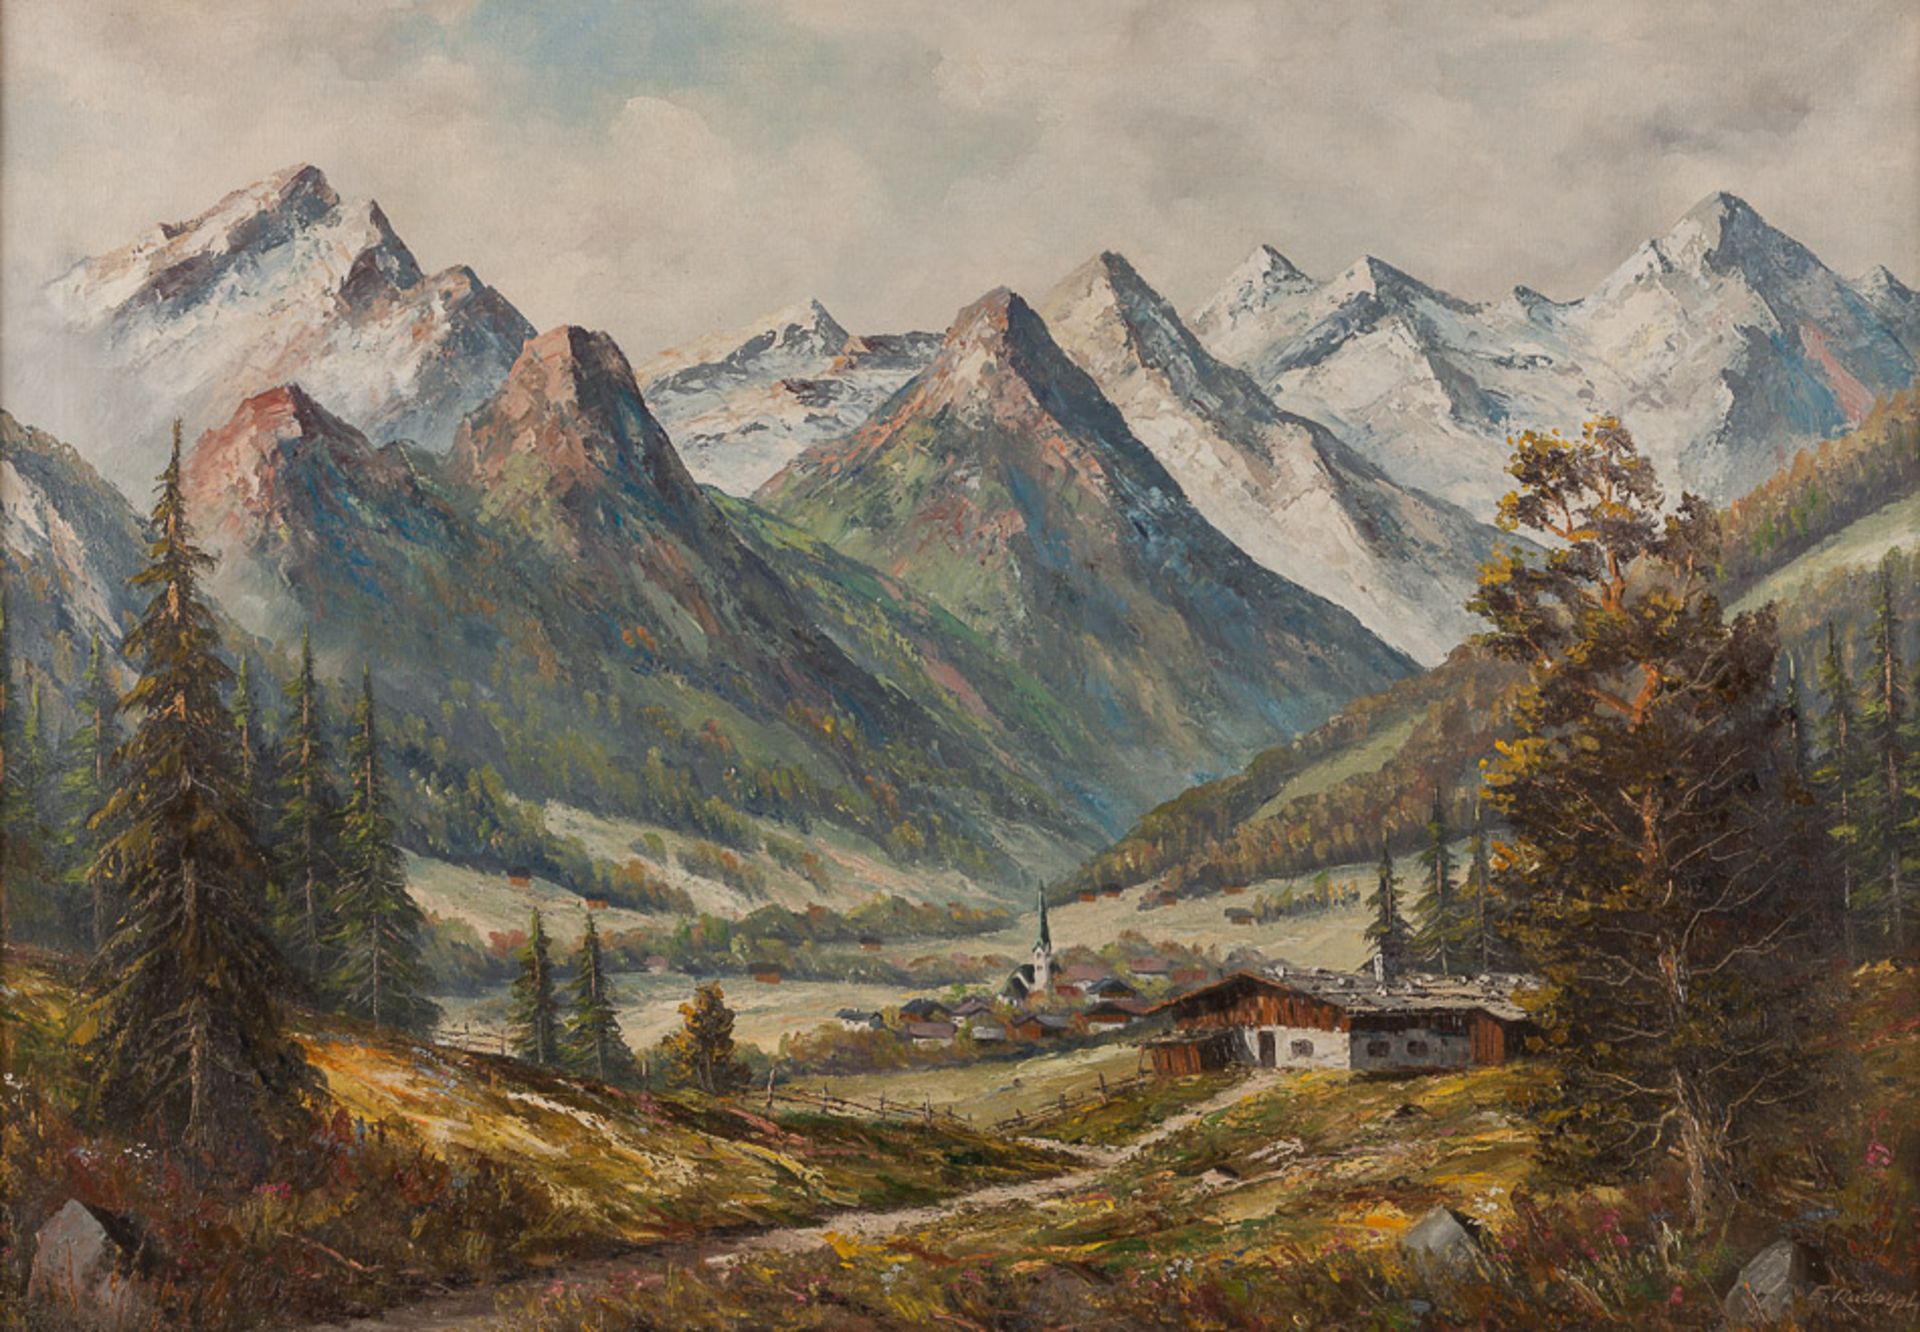 E.Rudolph 20. Jhd."Gebirgslandschaft"
Gemälde Öl/Leinwand, 70 cm x 100 cm, gerahmt,
rechts unten